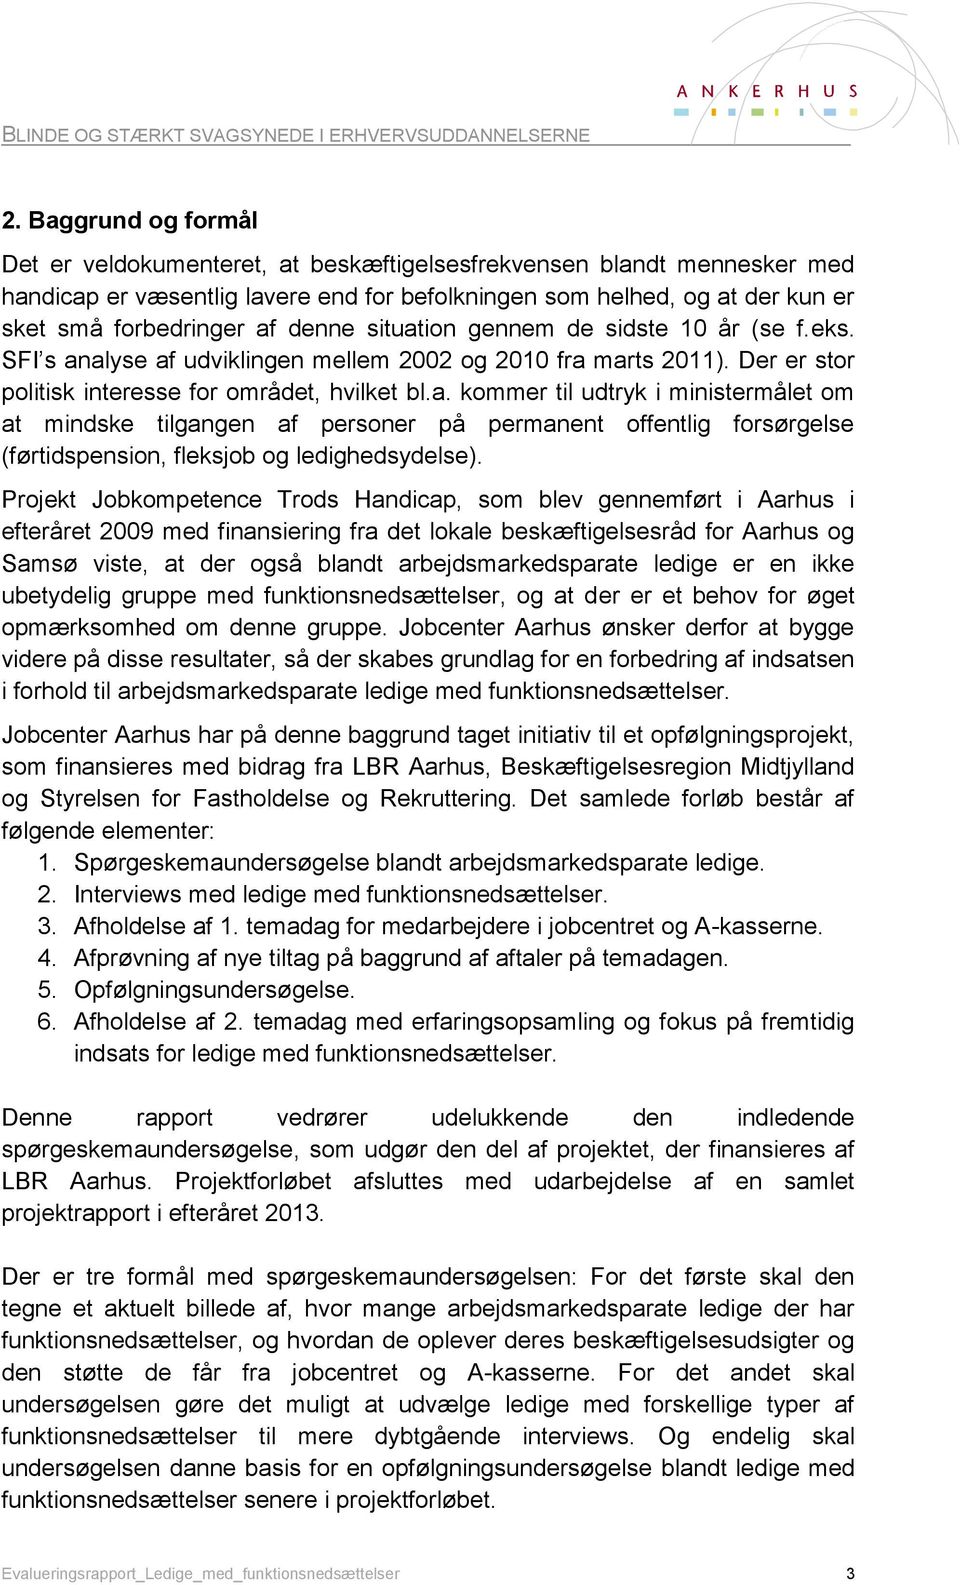 Projekt Jobkompetence Trods Handicap, som blev gennemført i Aarhus i efteråret 2009 med finansiering fra det lokale beskæftigelsesråd for Aarhus og Samsø viste, at der også blandt